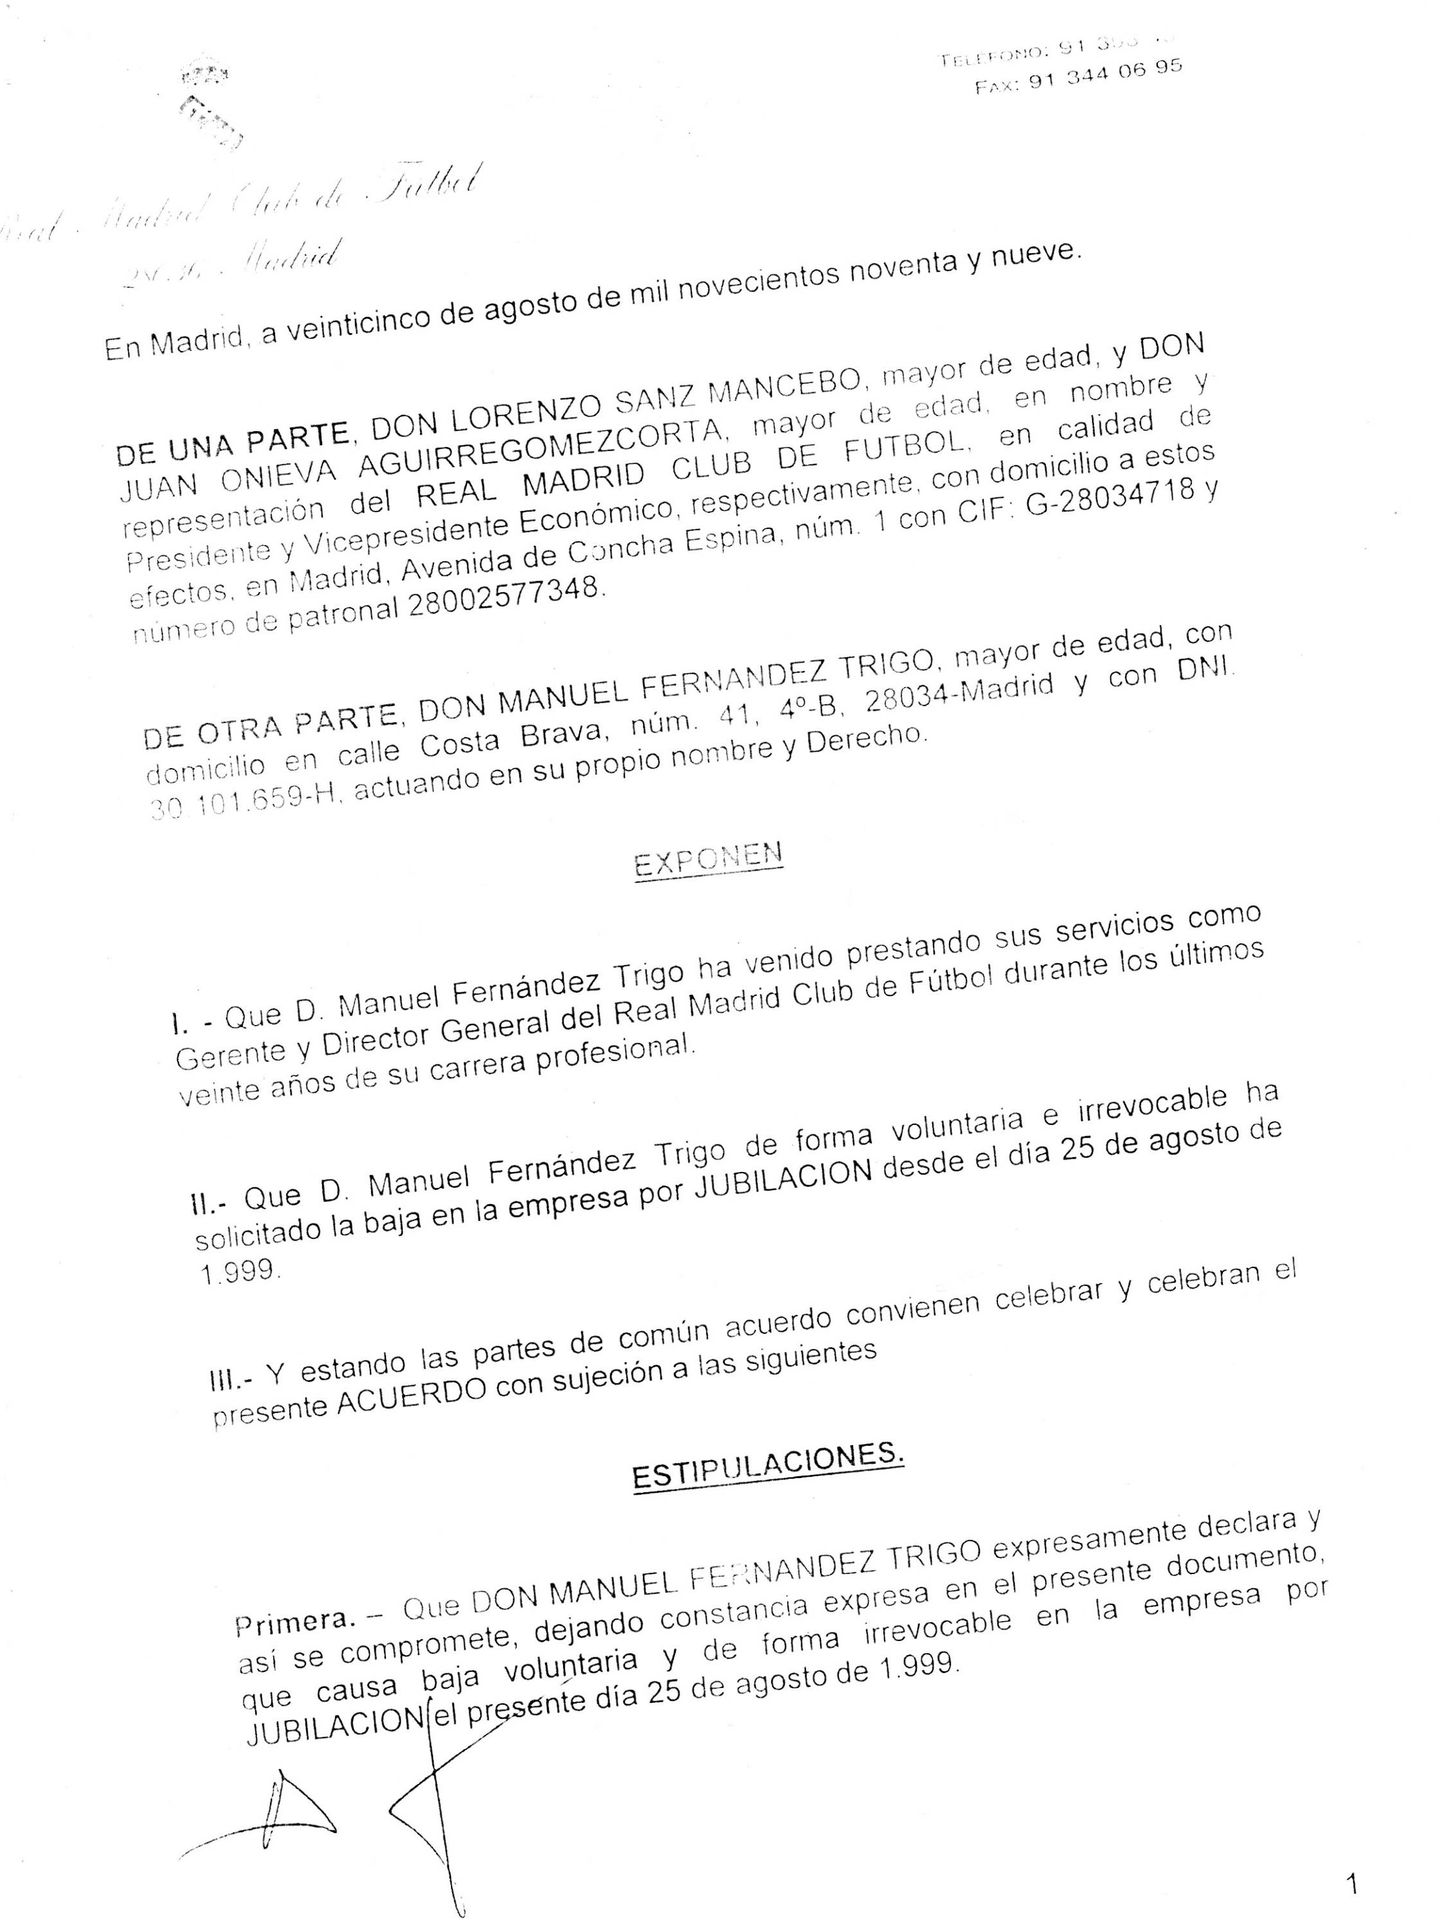 Documento que Fernández Trigo negoció con Lorenzo Sanz y Juan Onieva para abandonar el Real Madrid